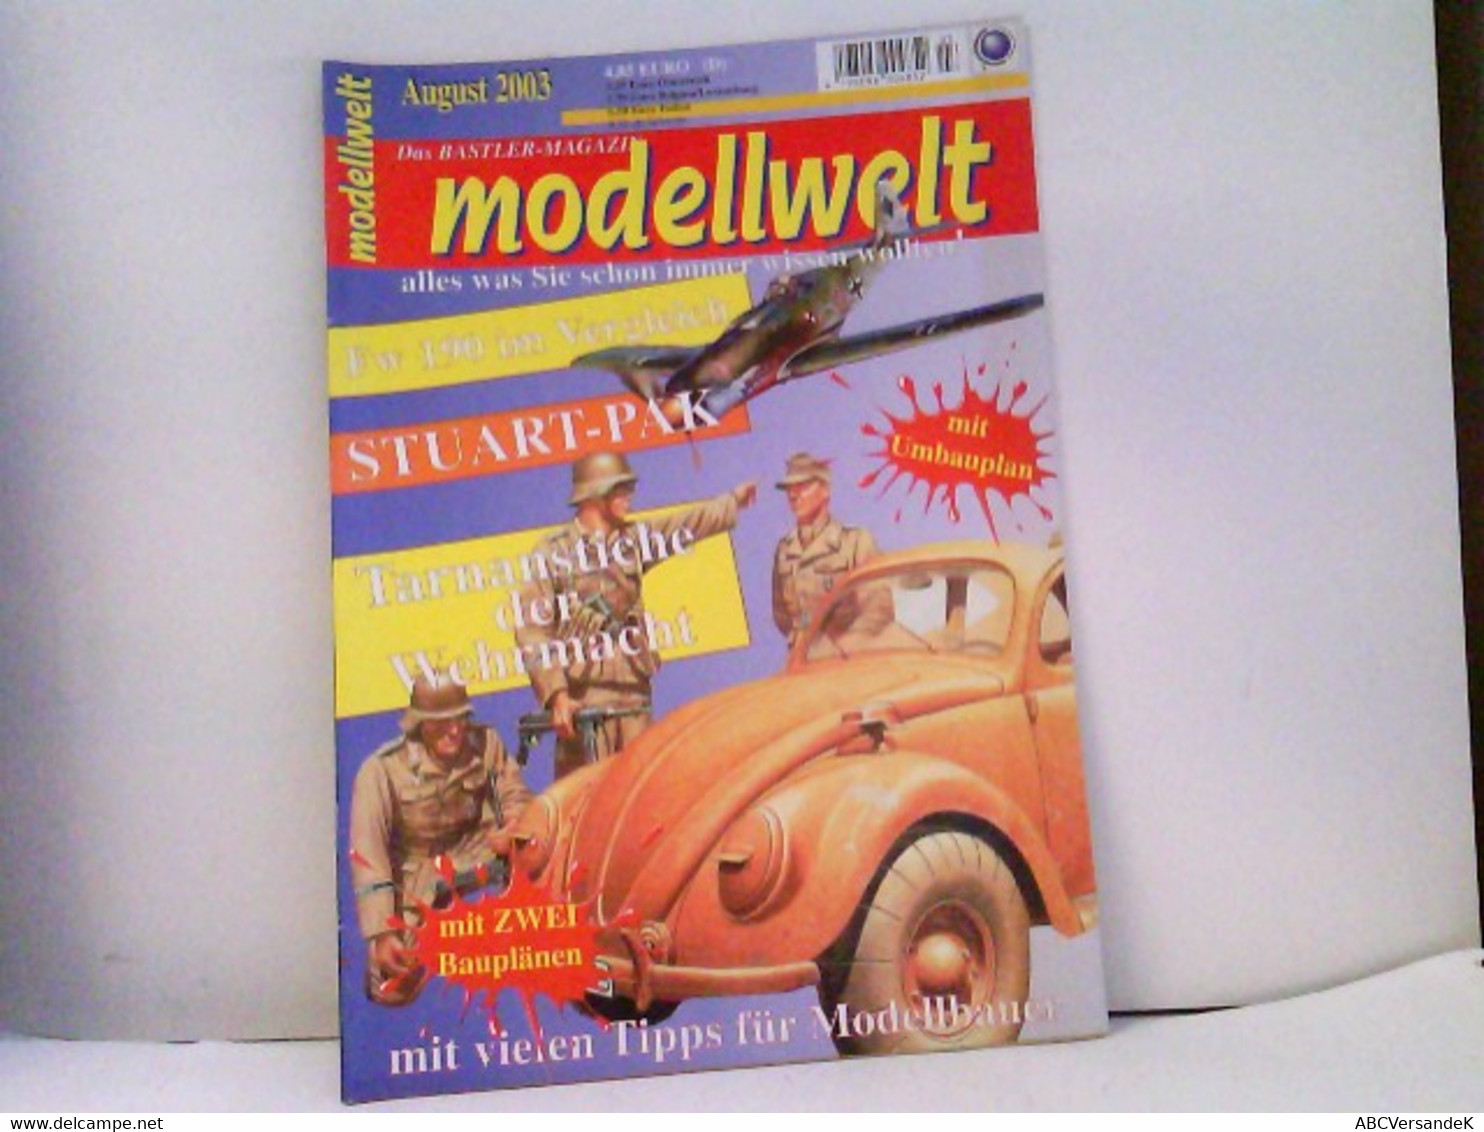 MODELLWELT Das Magazin Für Modellbau 8/2003 - Polizie & Militari